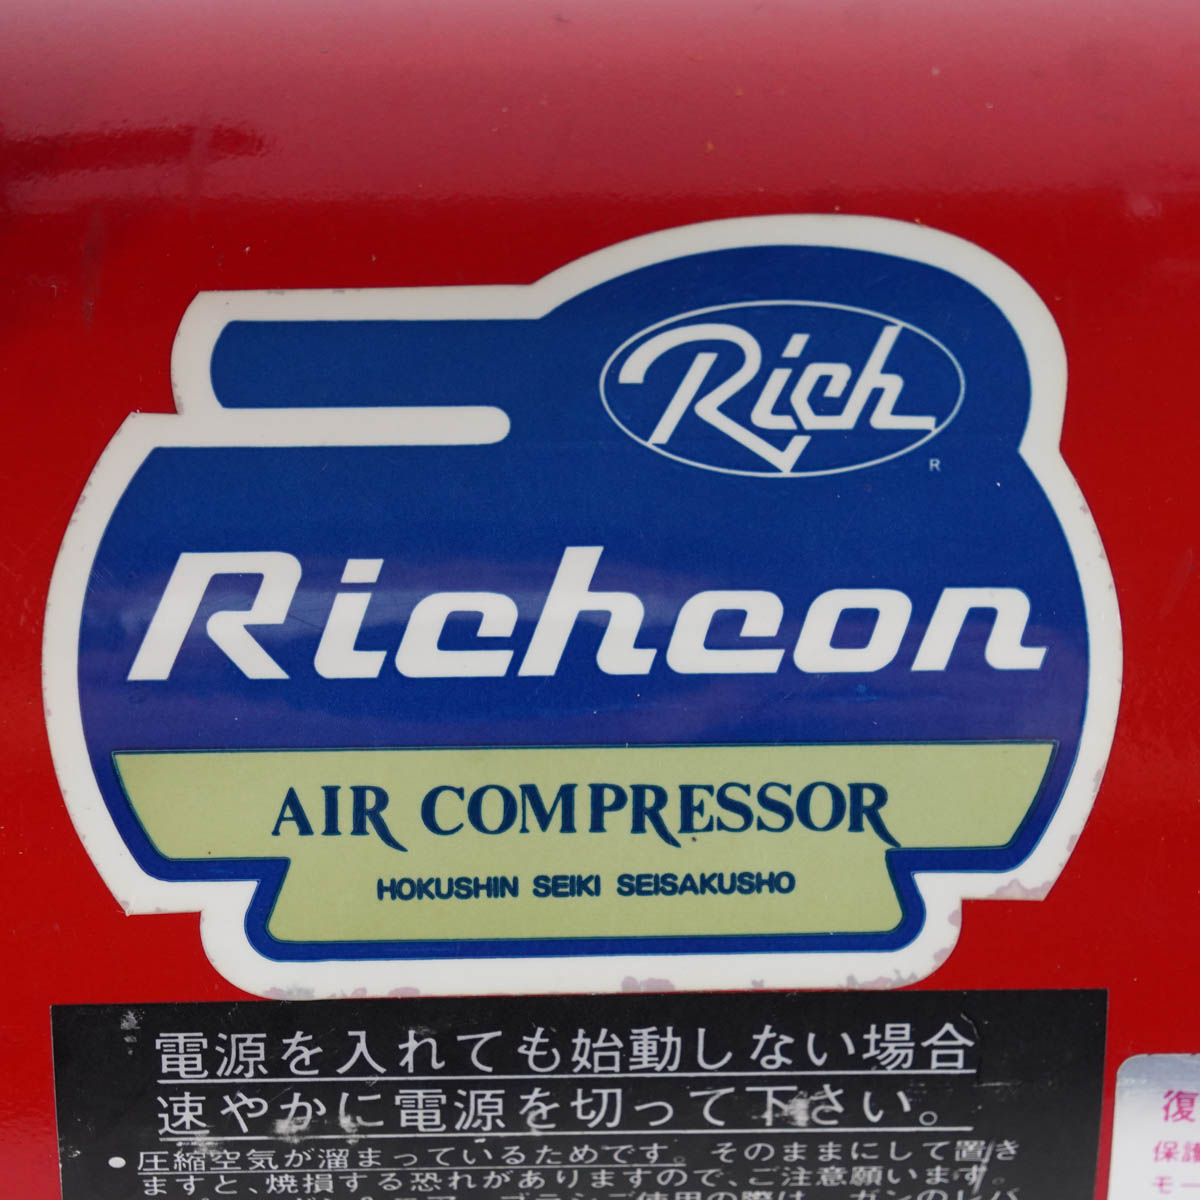 PG]USED 8日保証 Richcon KS-707 AIR COMPRESSOR エアーコンプレッサー 50/60Hz[ST04013-0090]  | すべての商品 | 中古販売分析機器計測器総合商社ディルウィングス